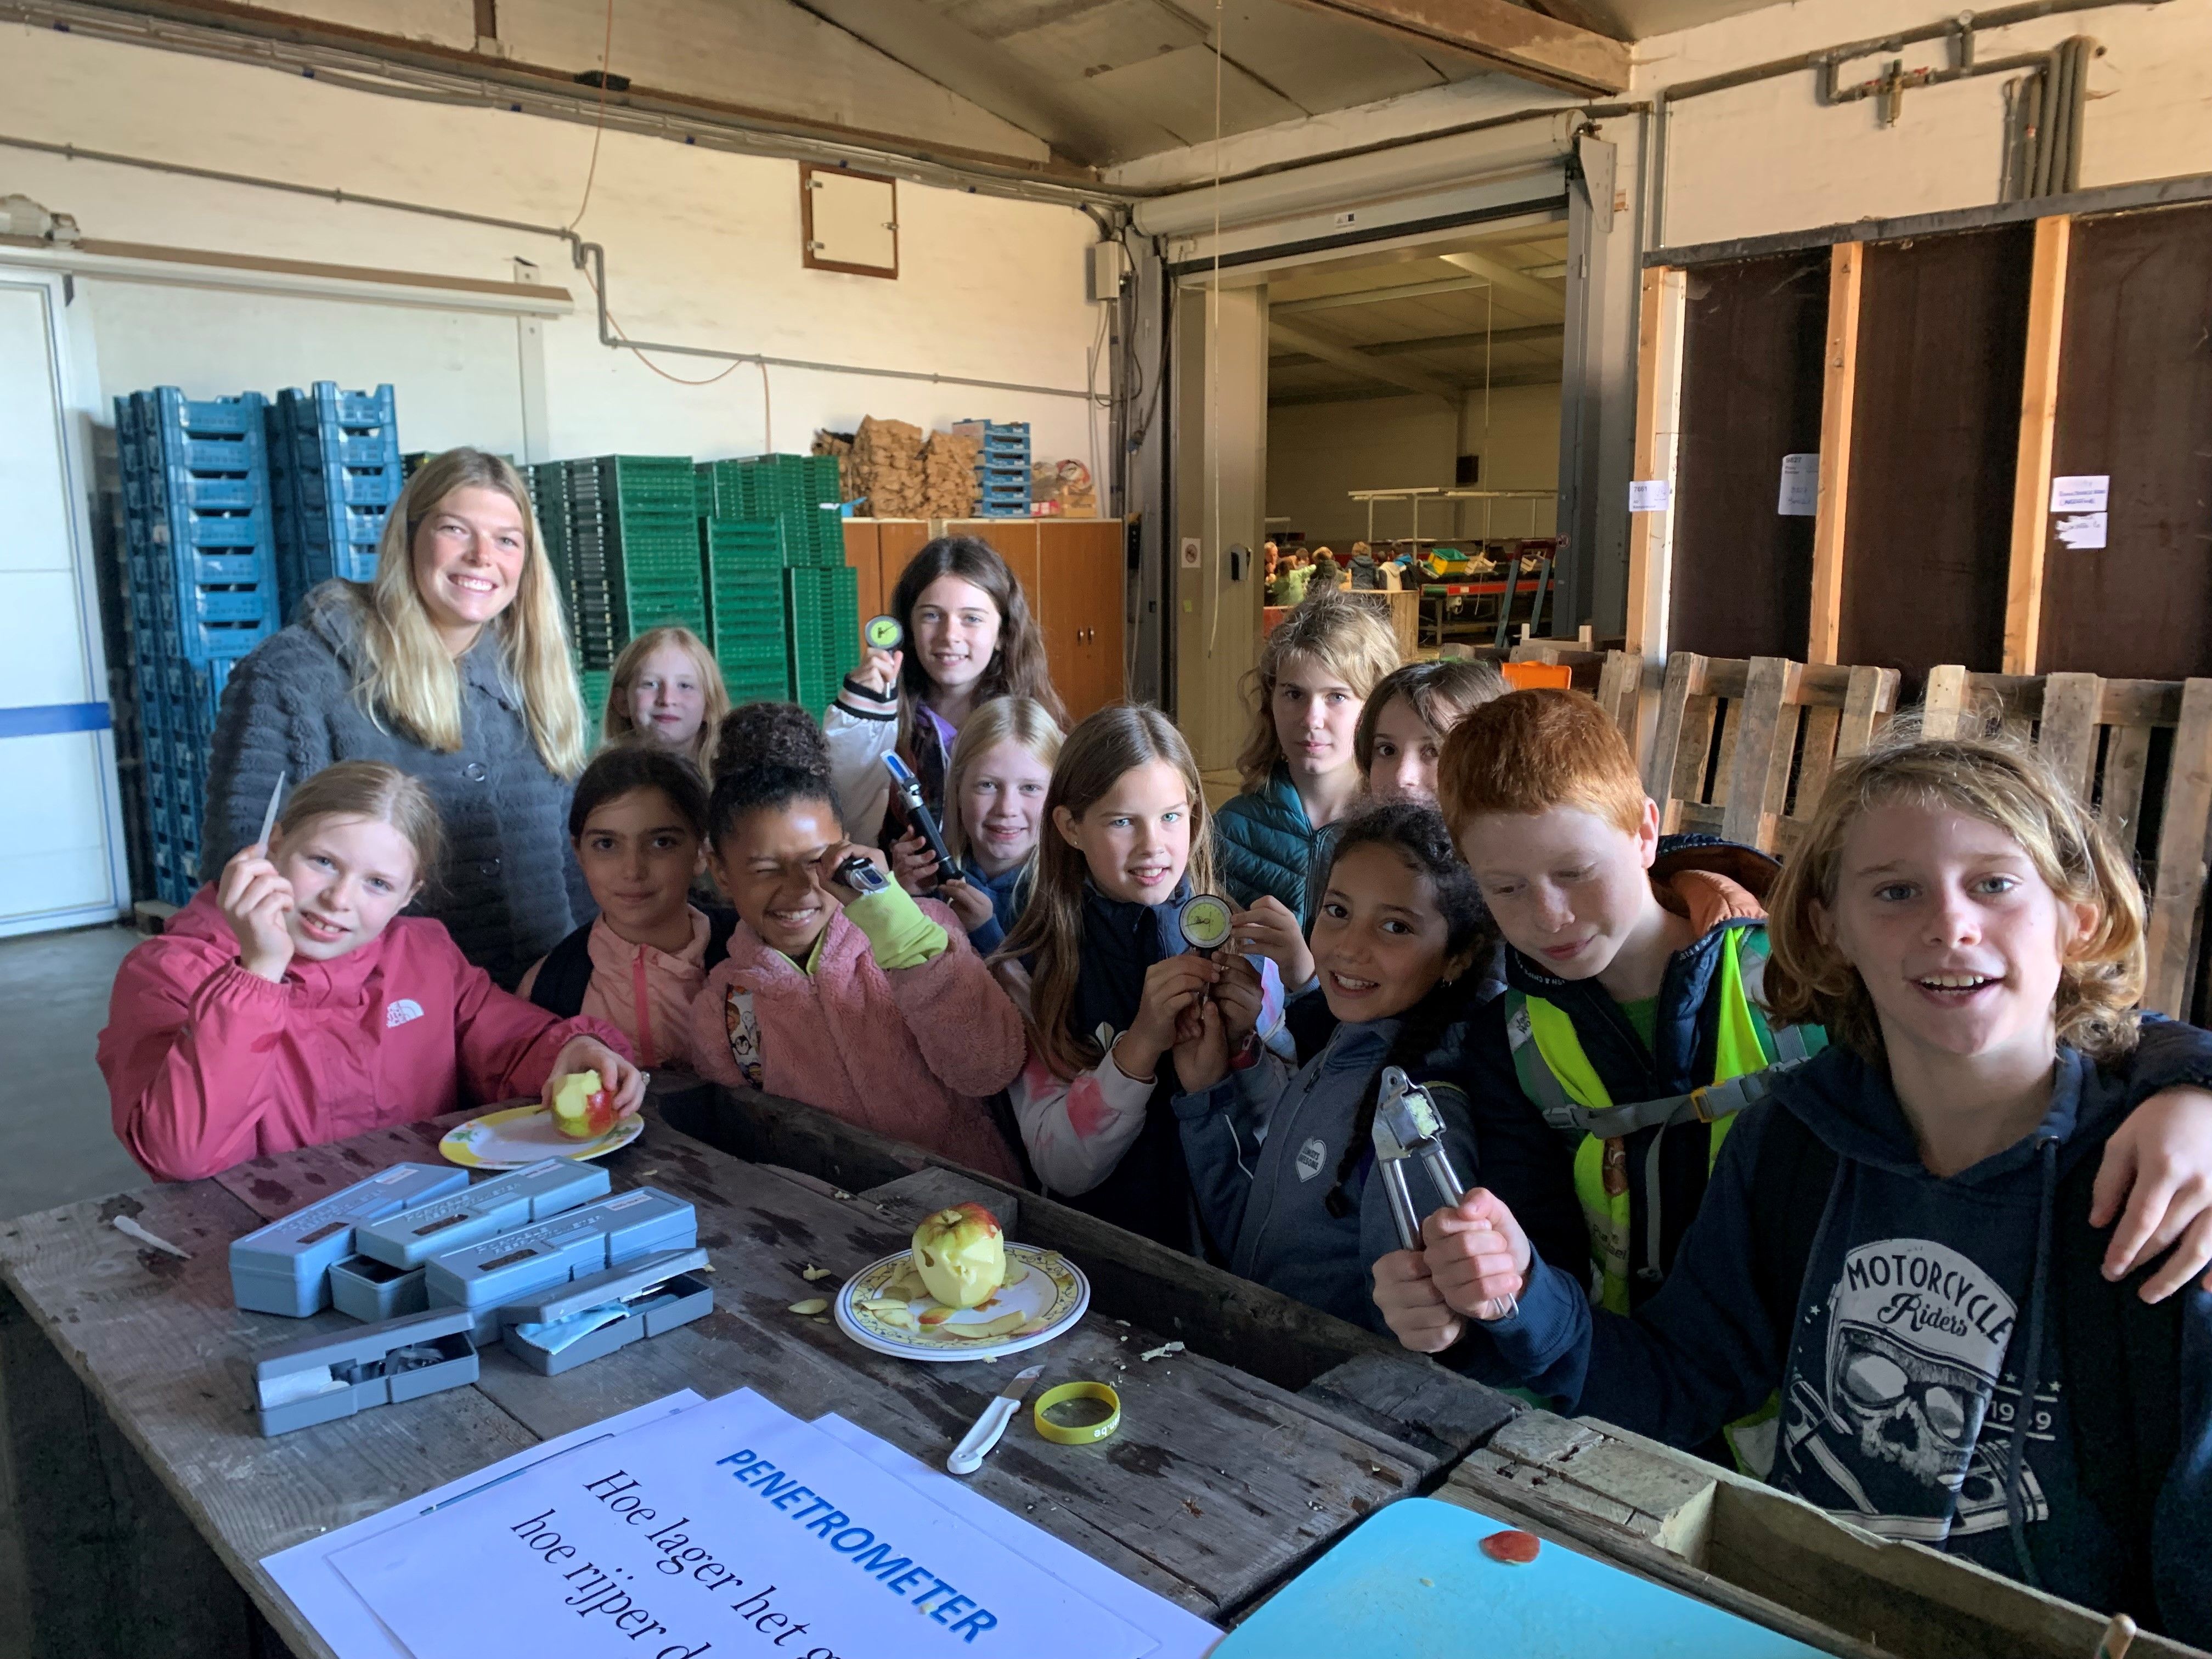 De leerlingen van basisschool De Boemerang uit Meerbeek bezochten op 6 oktober frhet fruitbedrijf Van der Velpen in Bierbeek